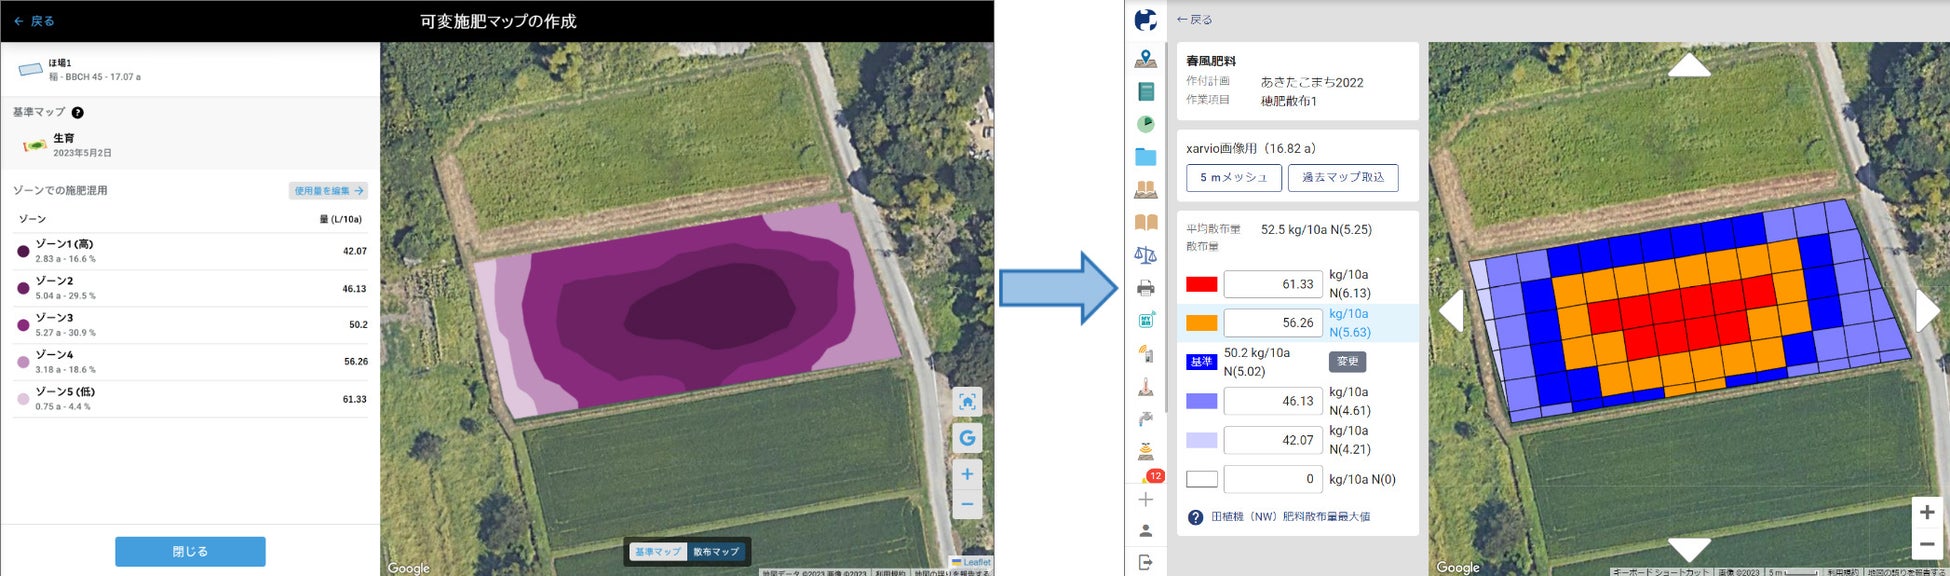 JA全農、クボタ、BASFが営農支援システム連携の実証試験のサブ画像2_ザルビオ® フィールドマネージャーで作成した可変施肥マップ(左図)をKSASに取り込んだイメージ(右図)